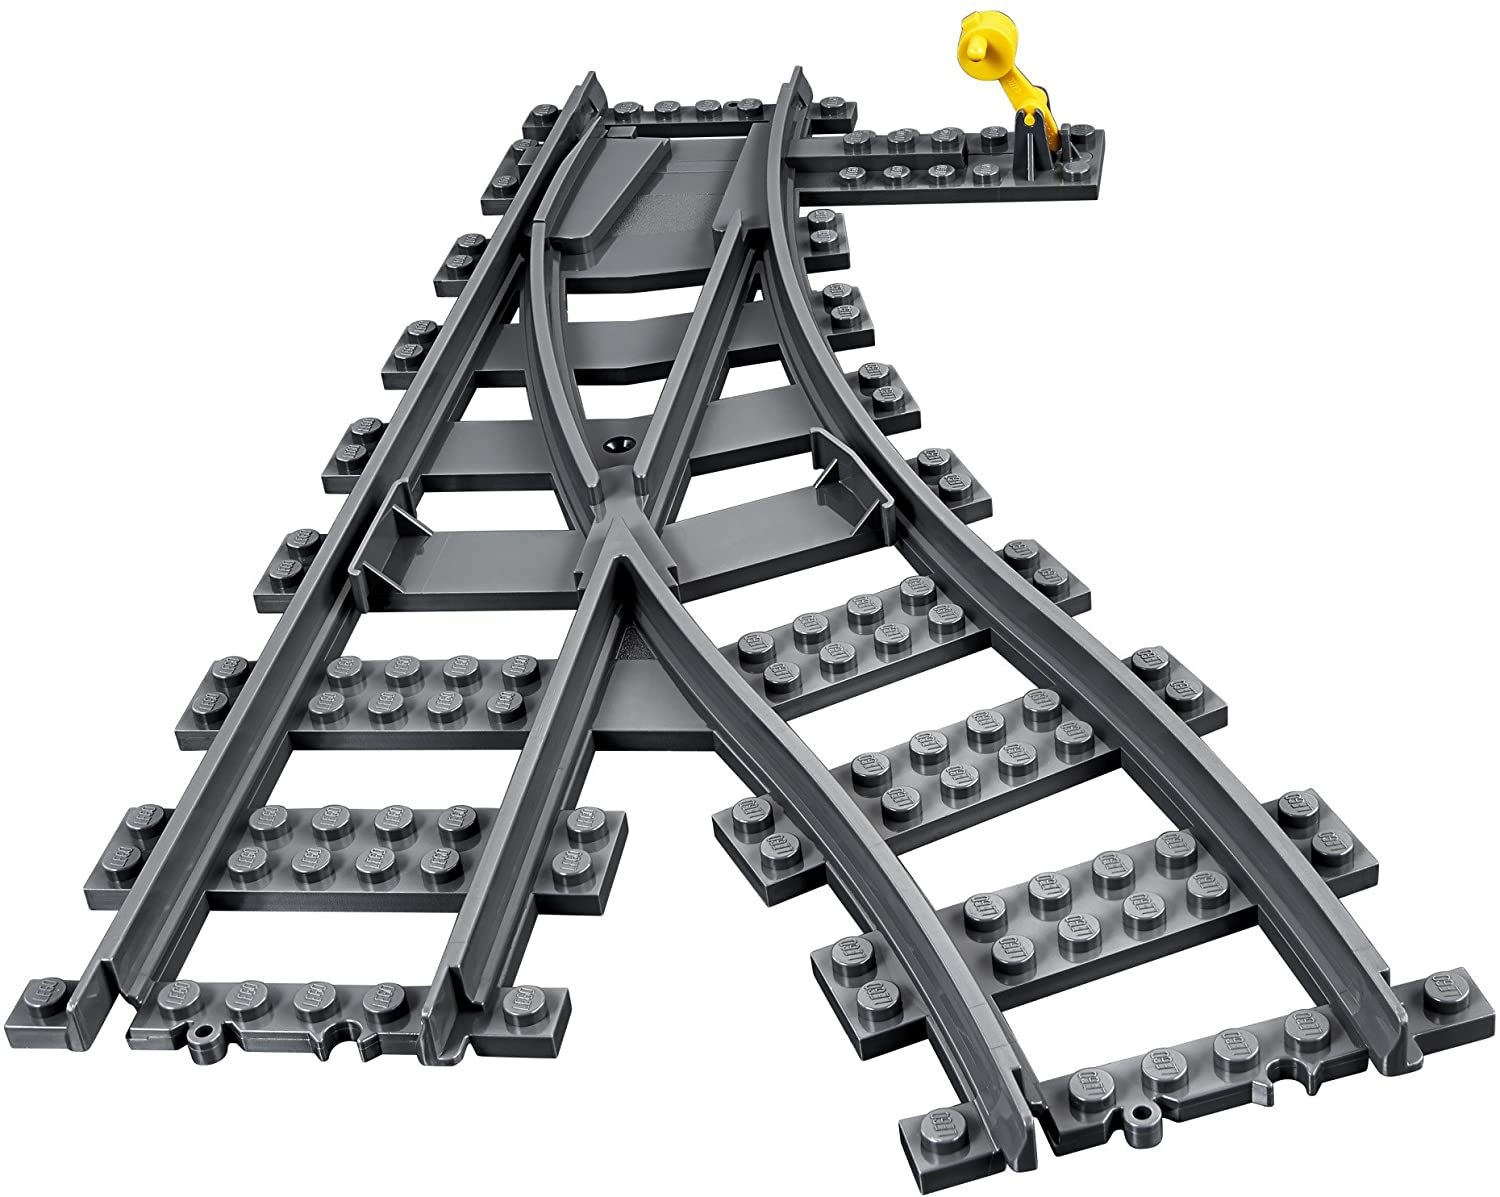 LEGO City Switch Tracks Building Kit (6 Pieces) - Mod: 60238